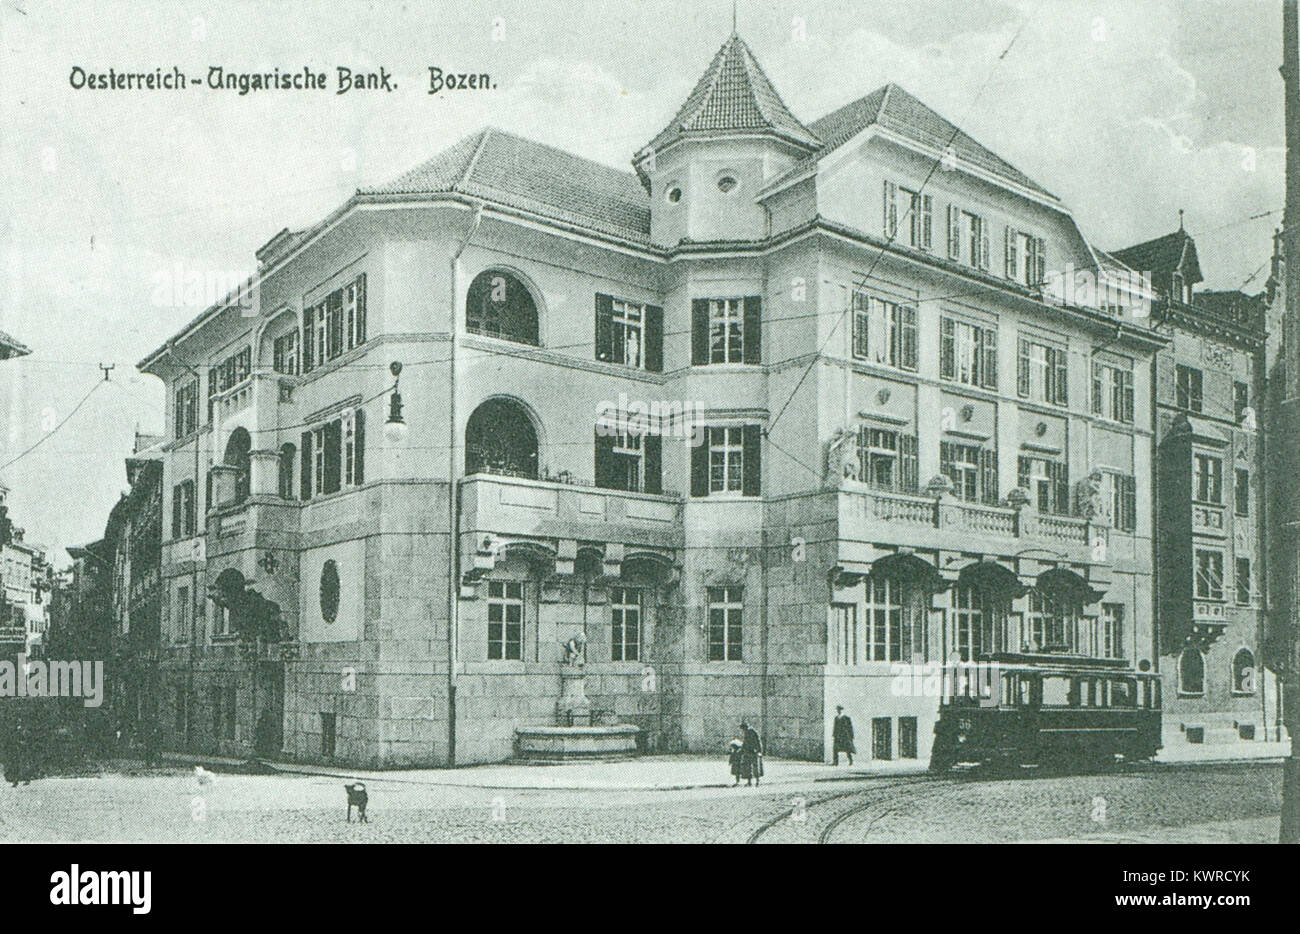 Österreichisch-Ungarische Bank in Bozen 1920 Stock Photo